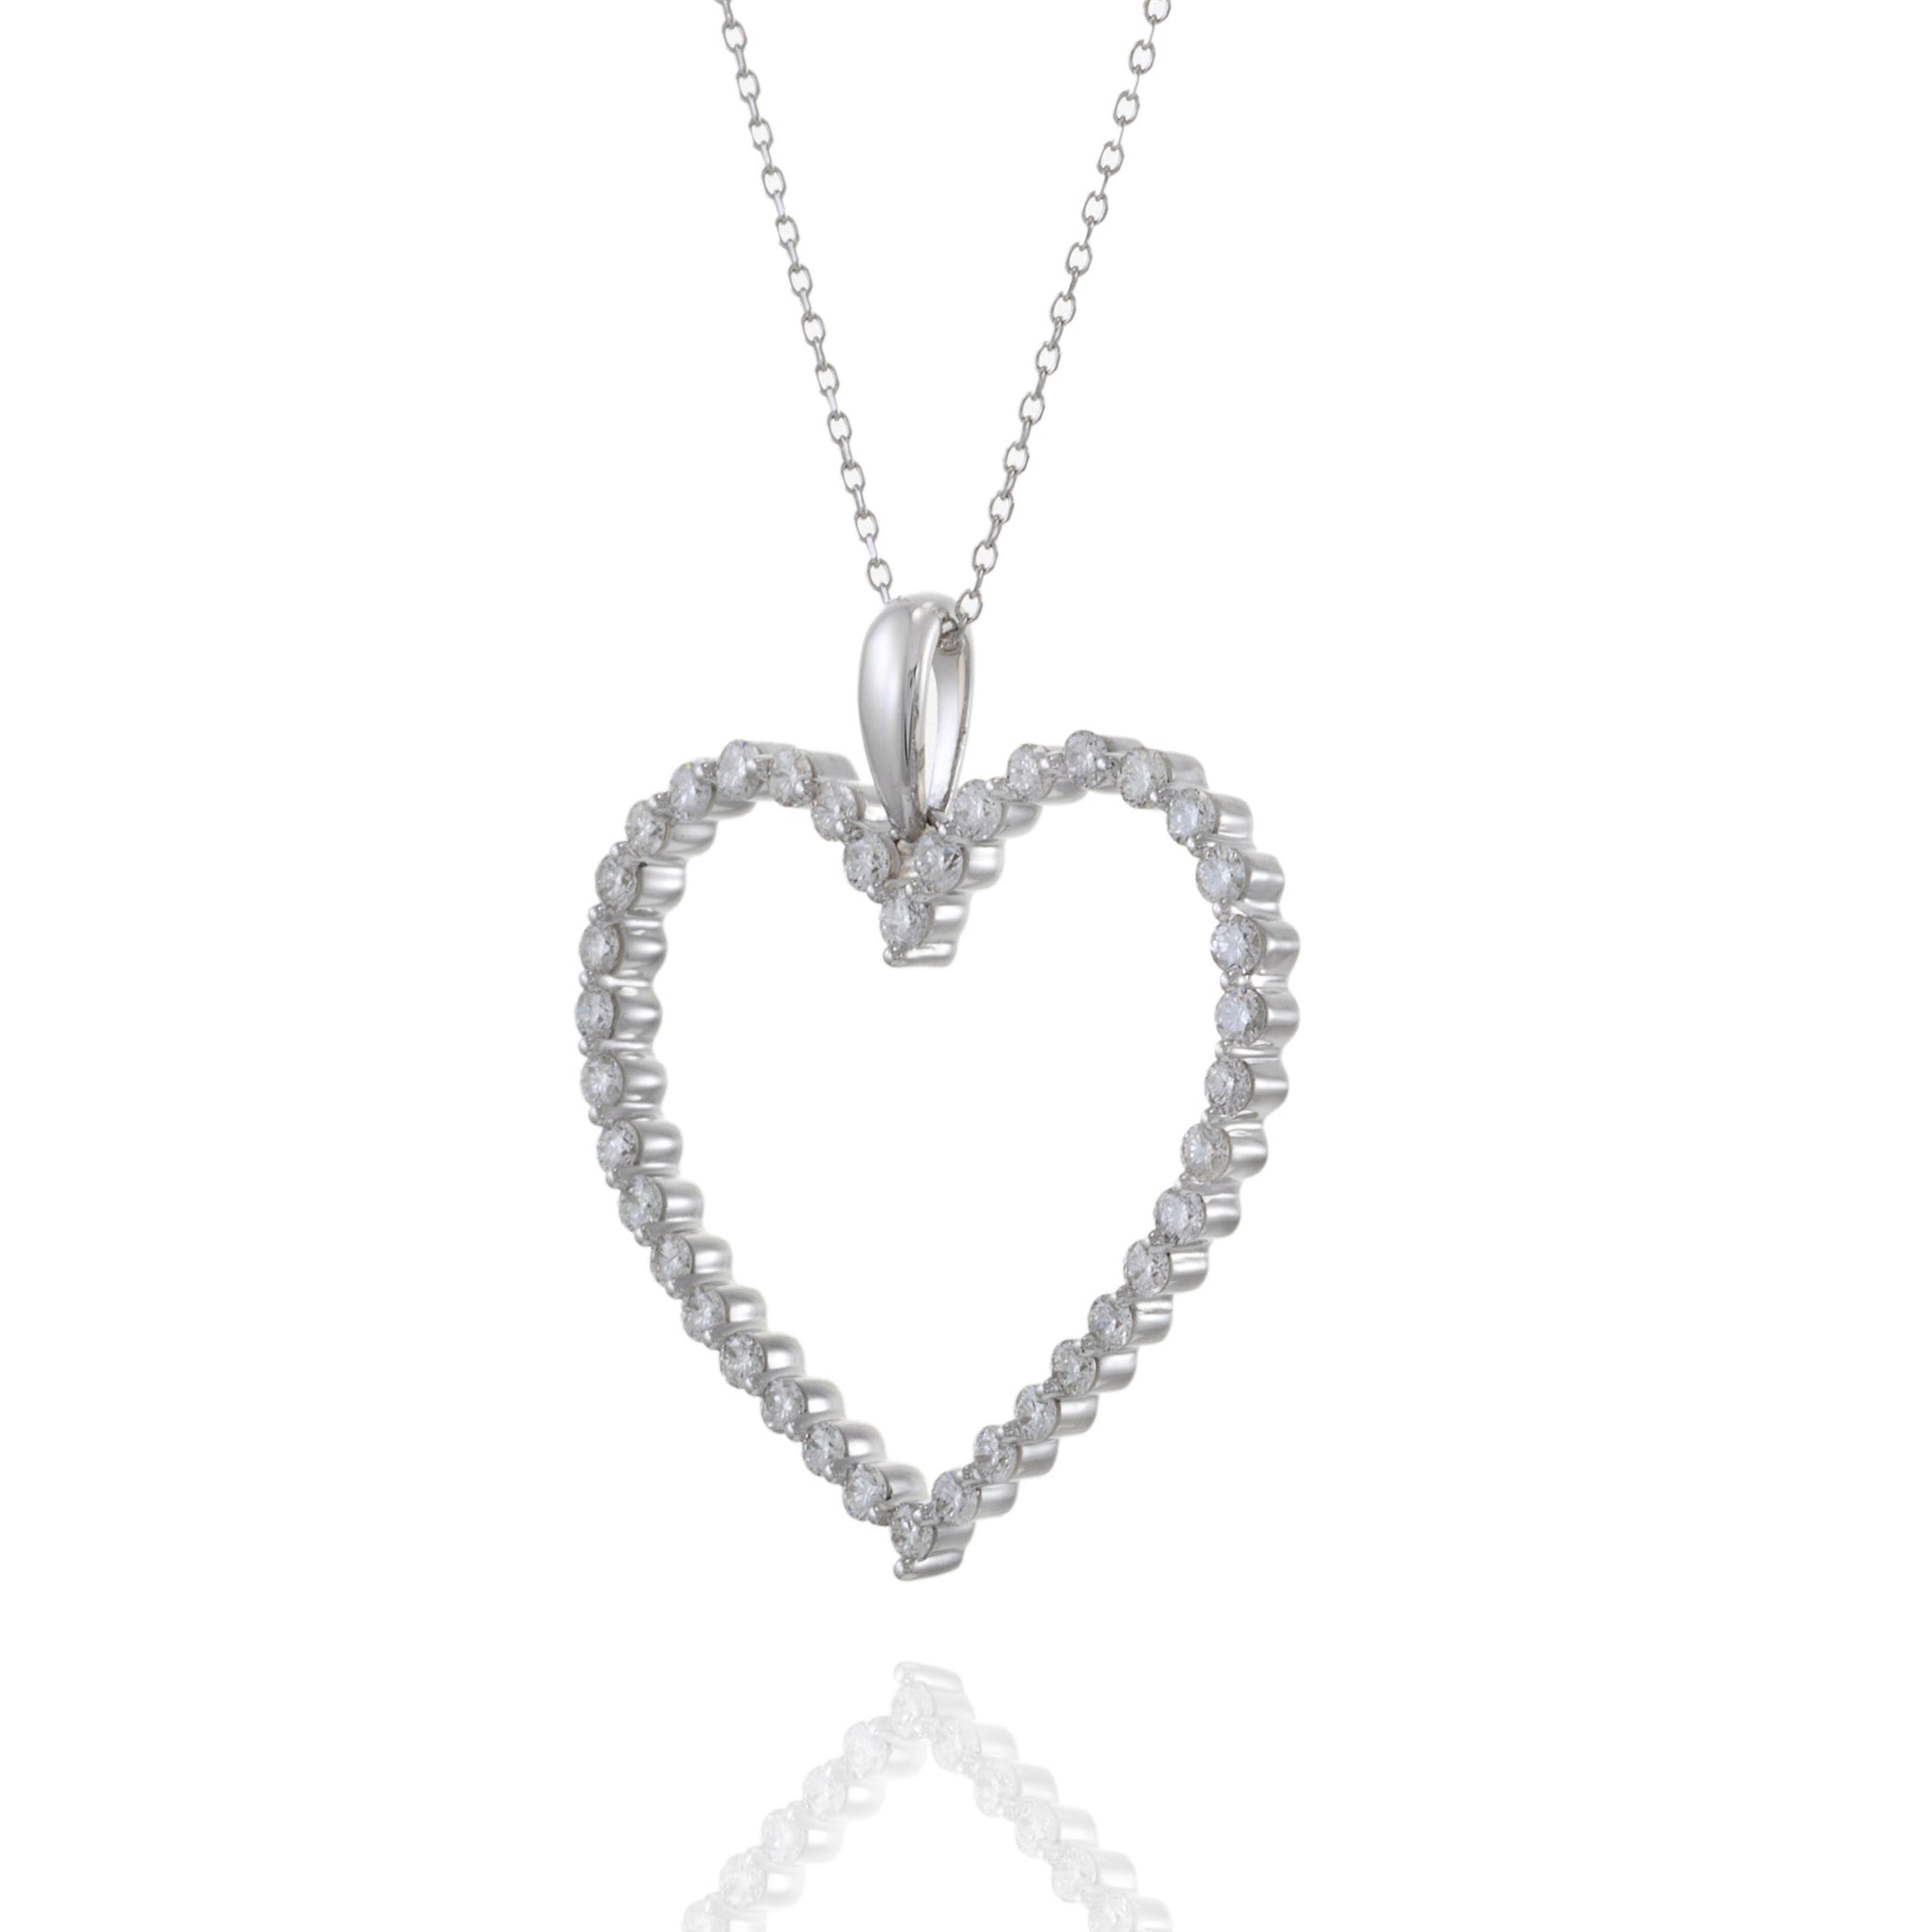 14KT White Gold Open Heart Diamond Pendant